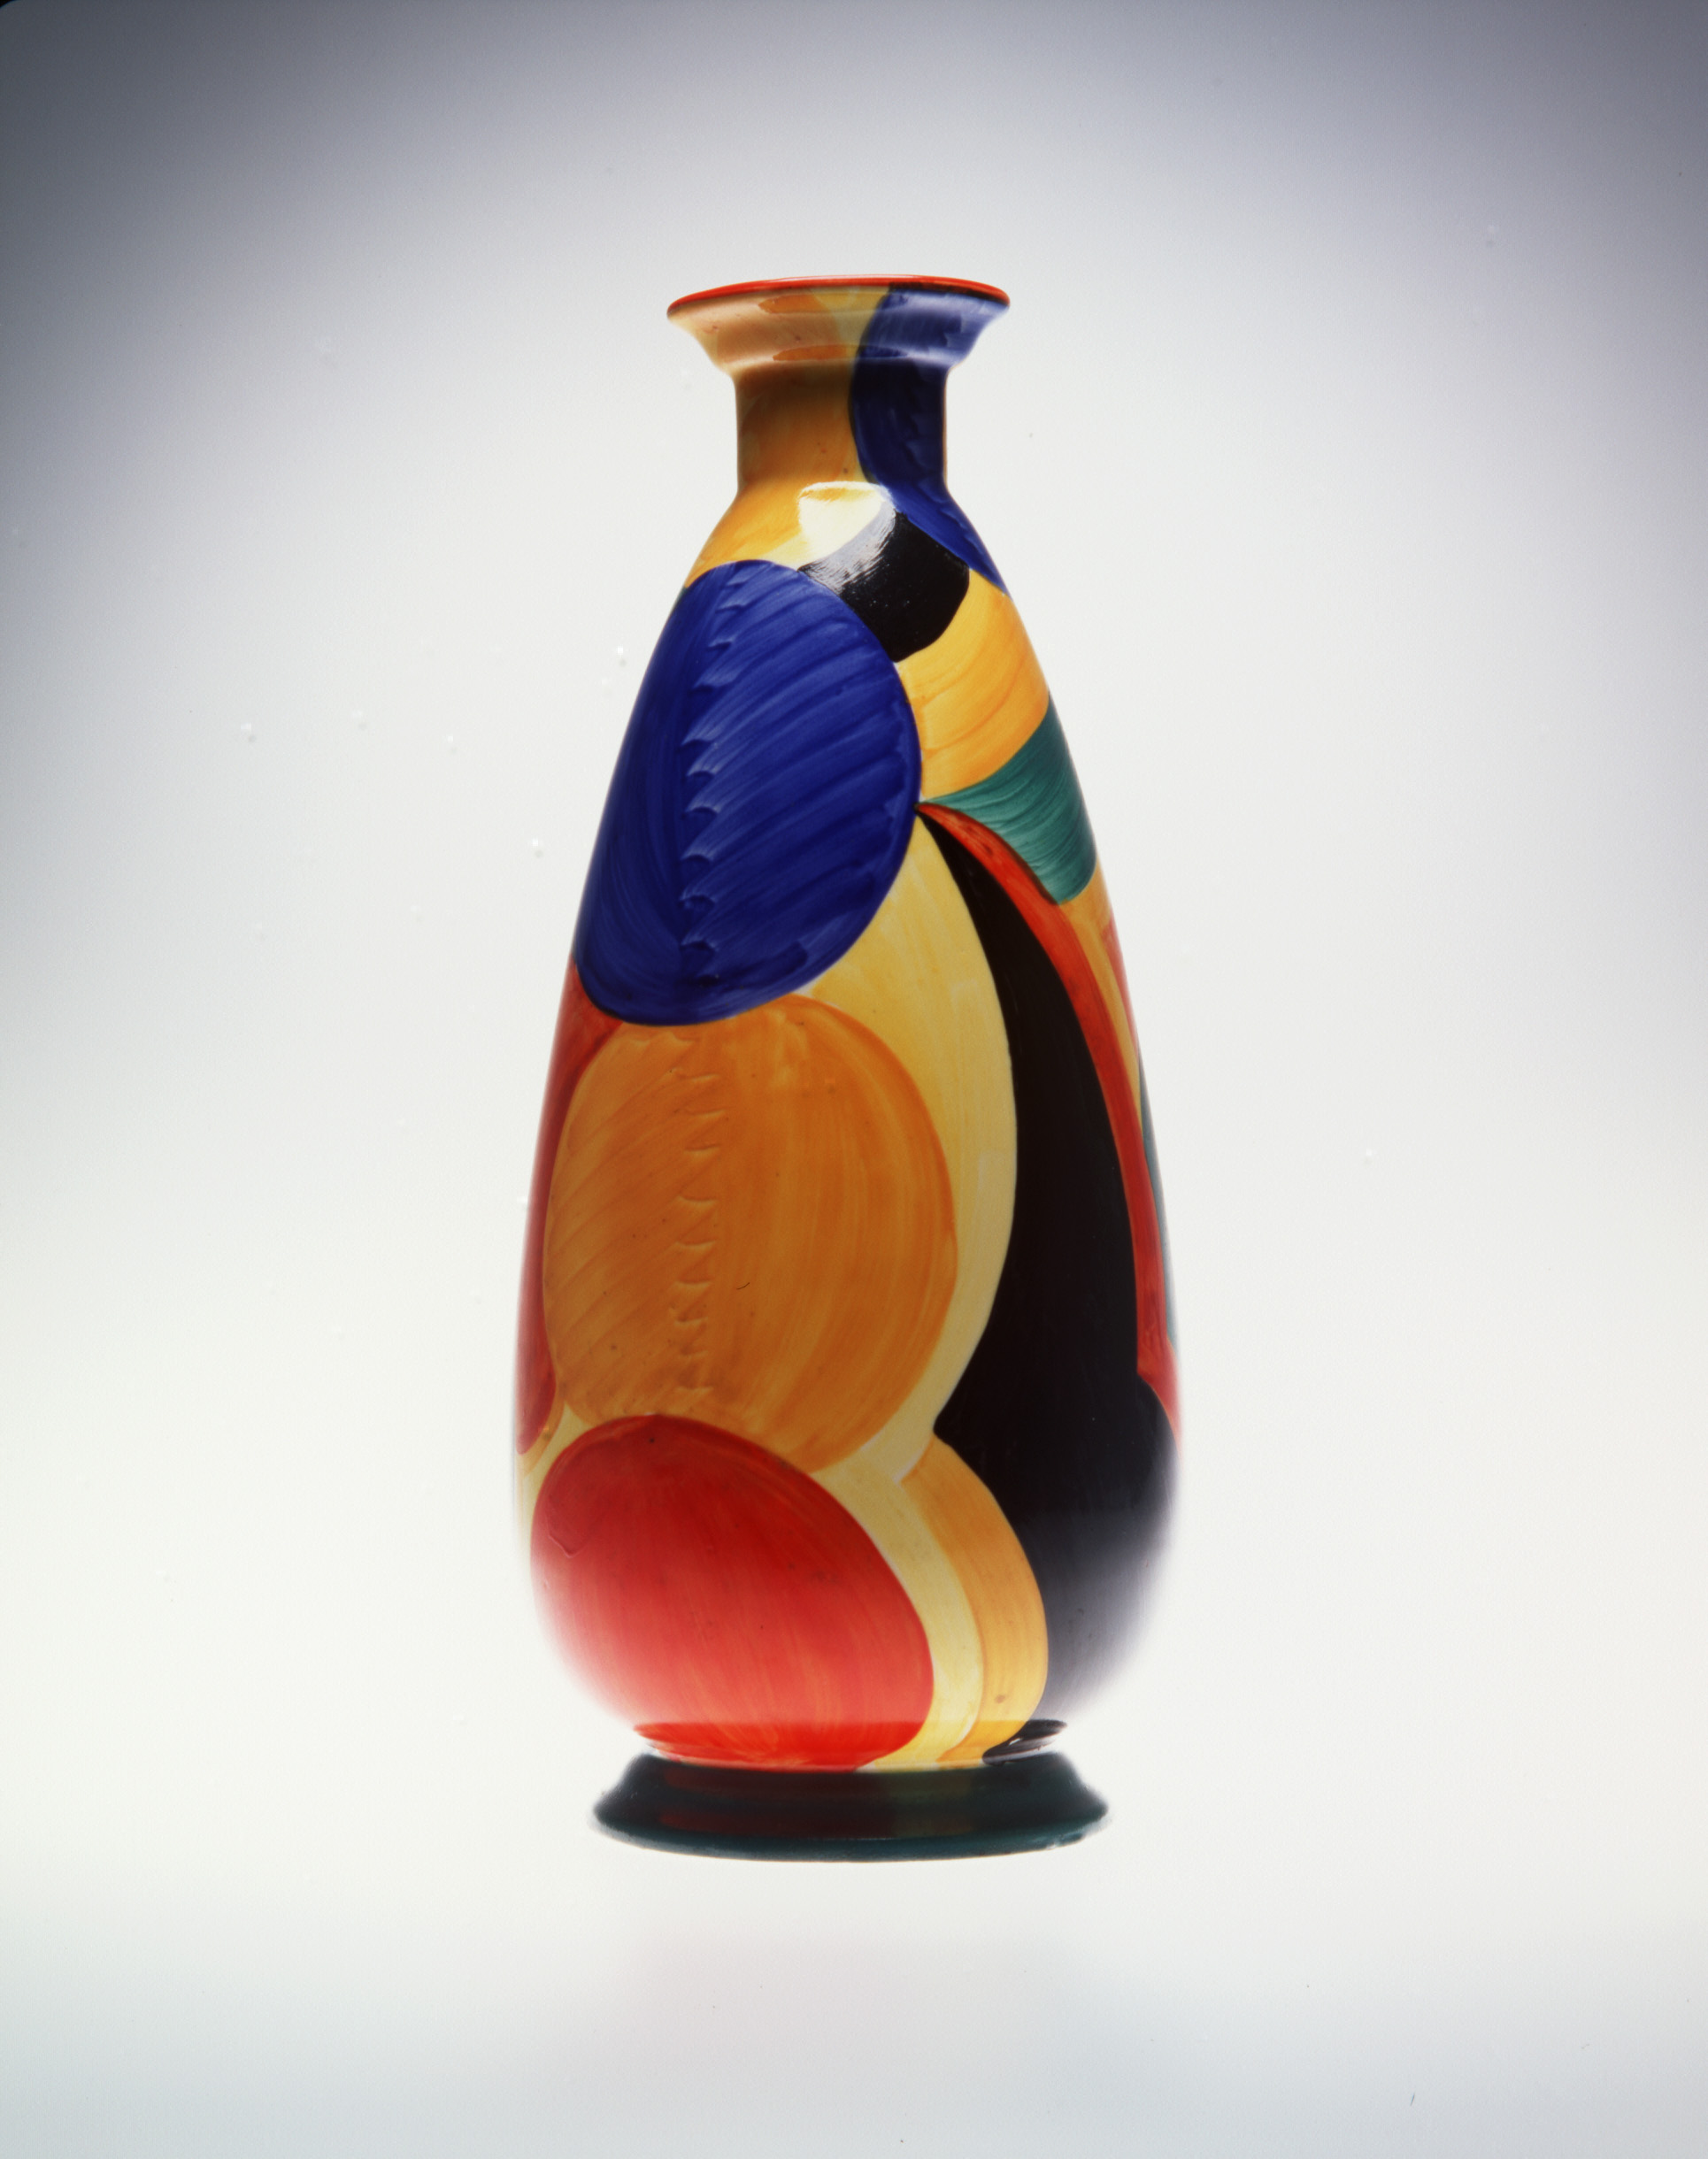 Vase designed by Susie Cooper